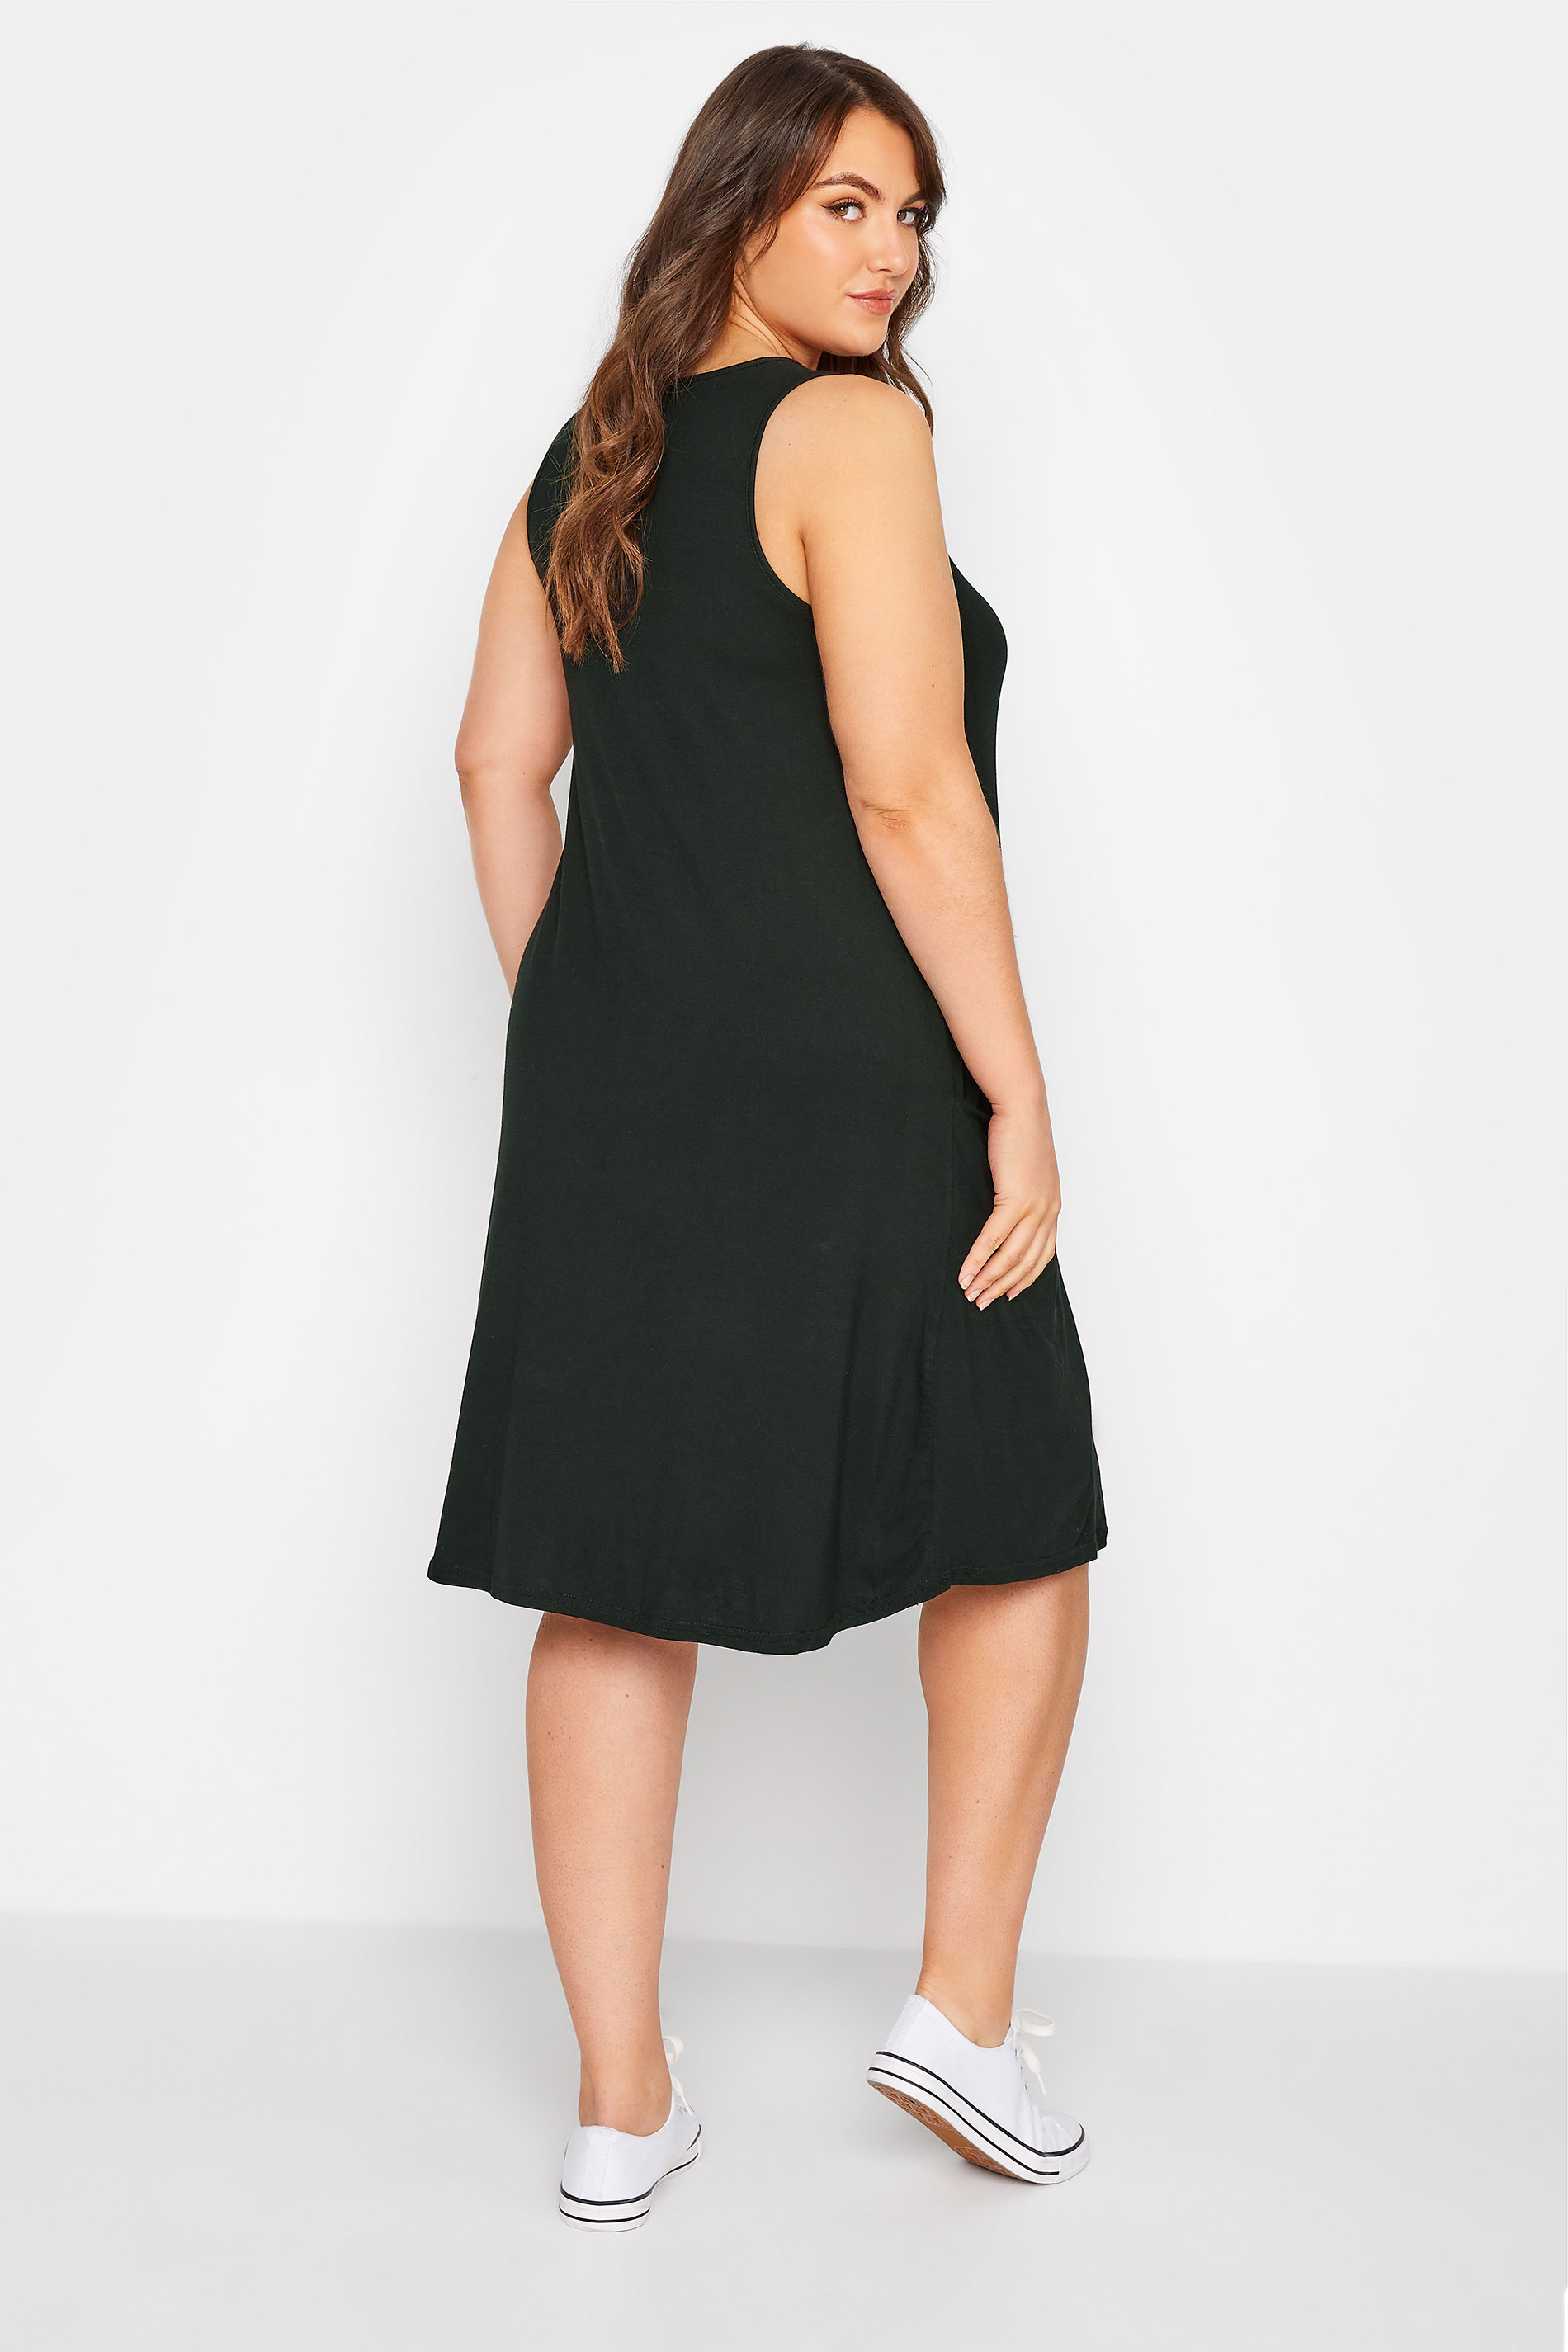 Black Sleeveless Drape Pocket Dress | Yours Clothing 3